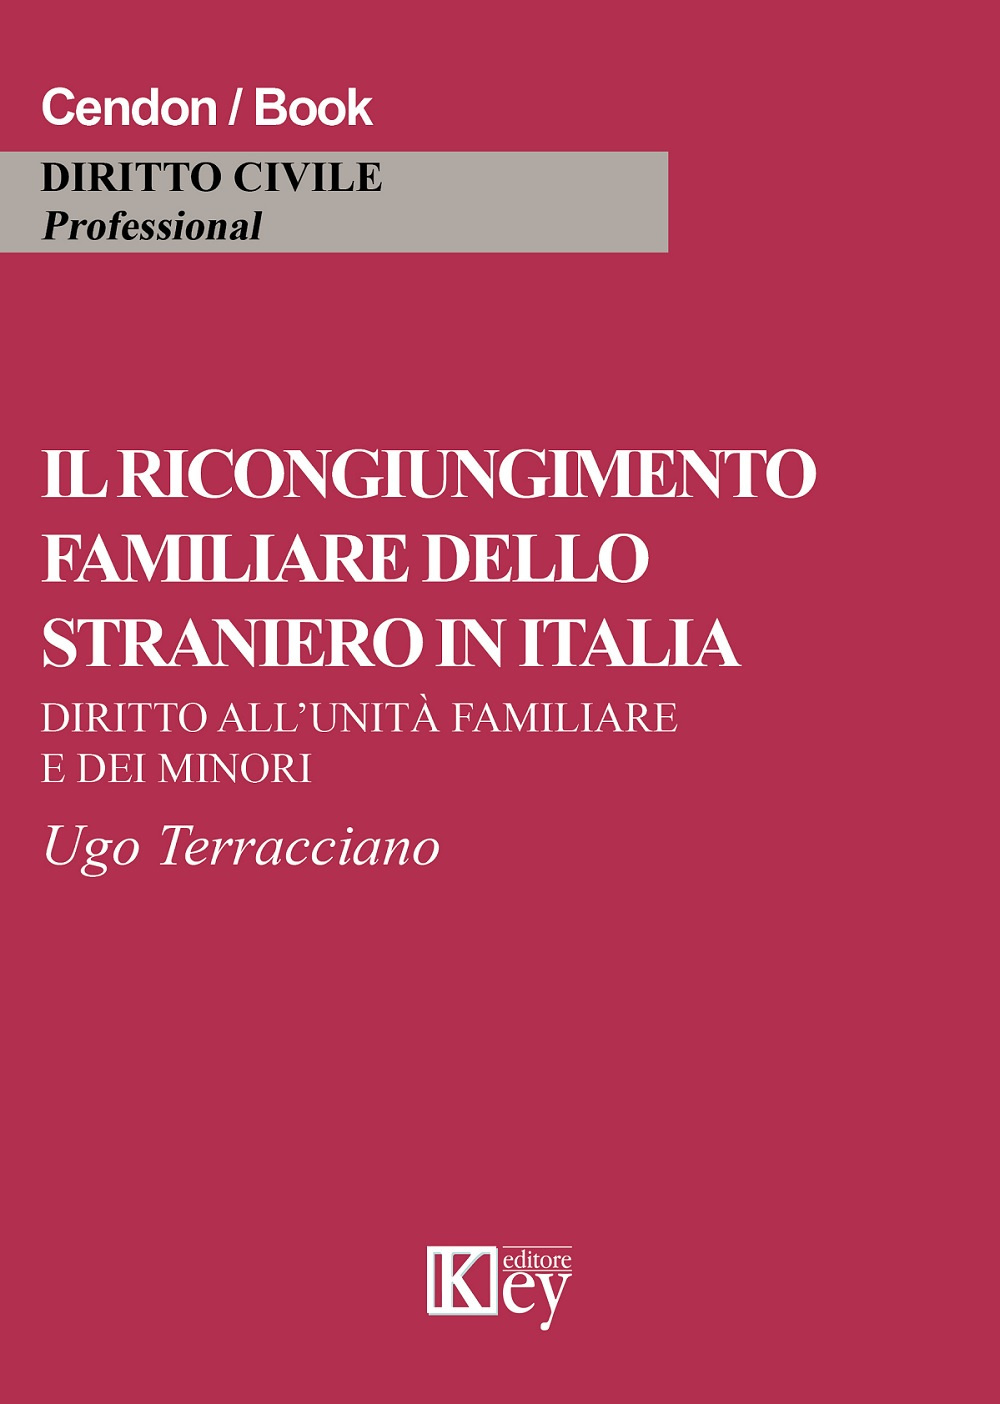 Image of Il ricongiungimento familiare dello straniero in Italia. Diritto all'unità familiare e dei minori